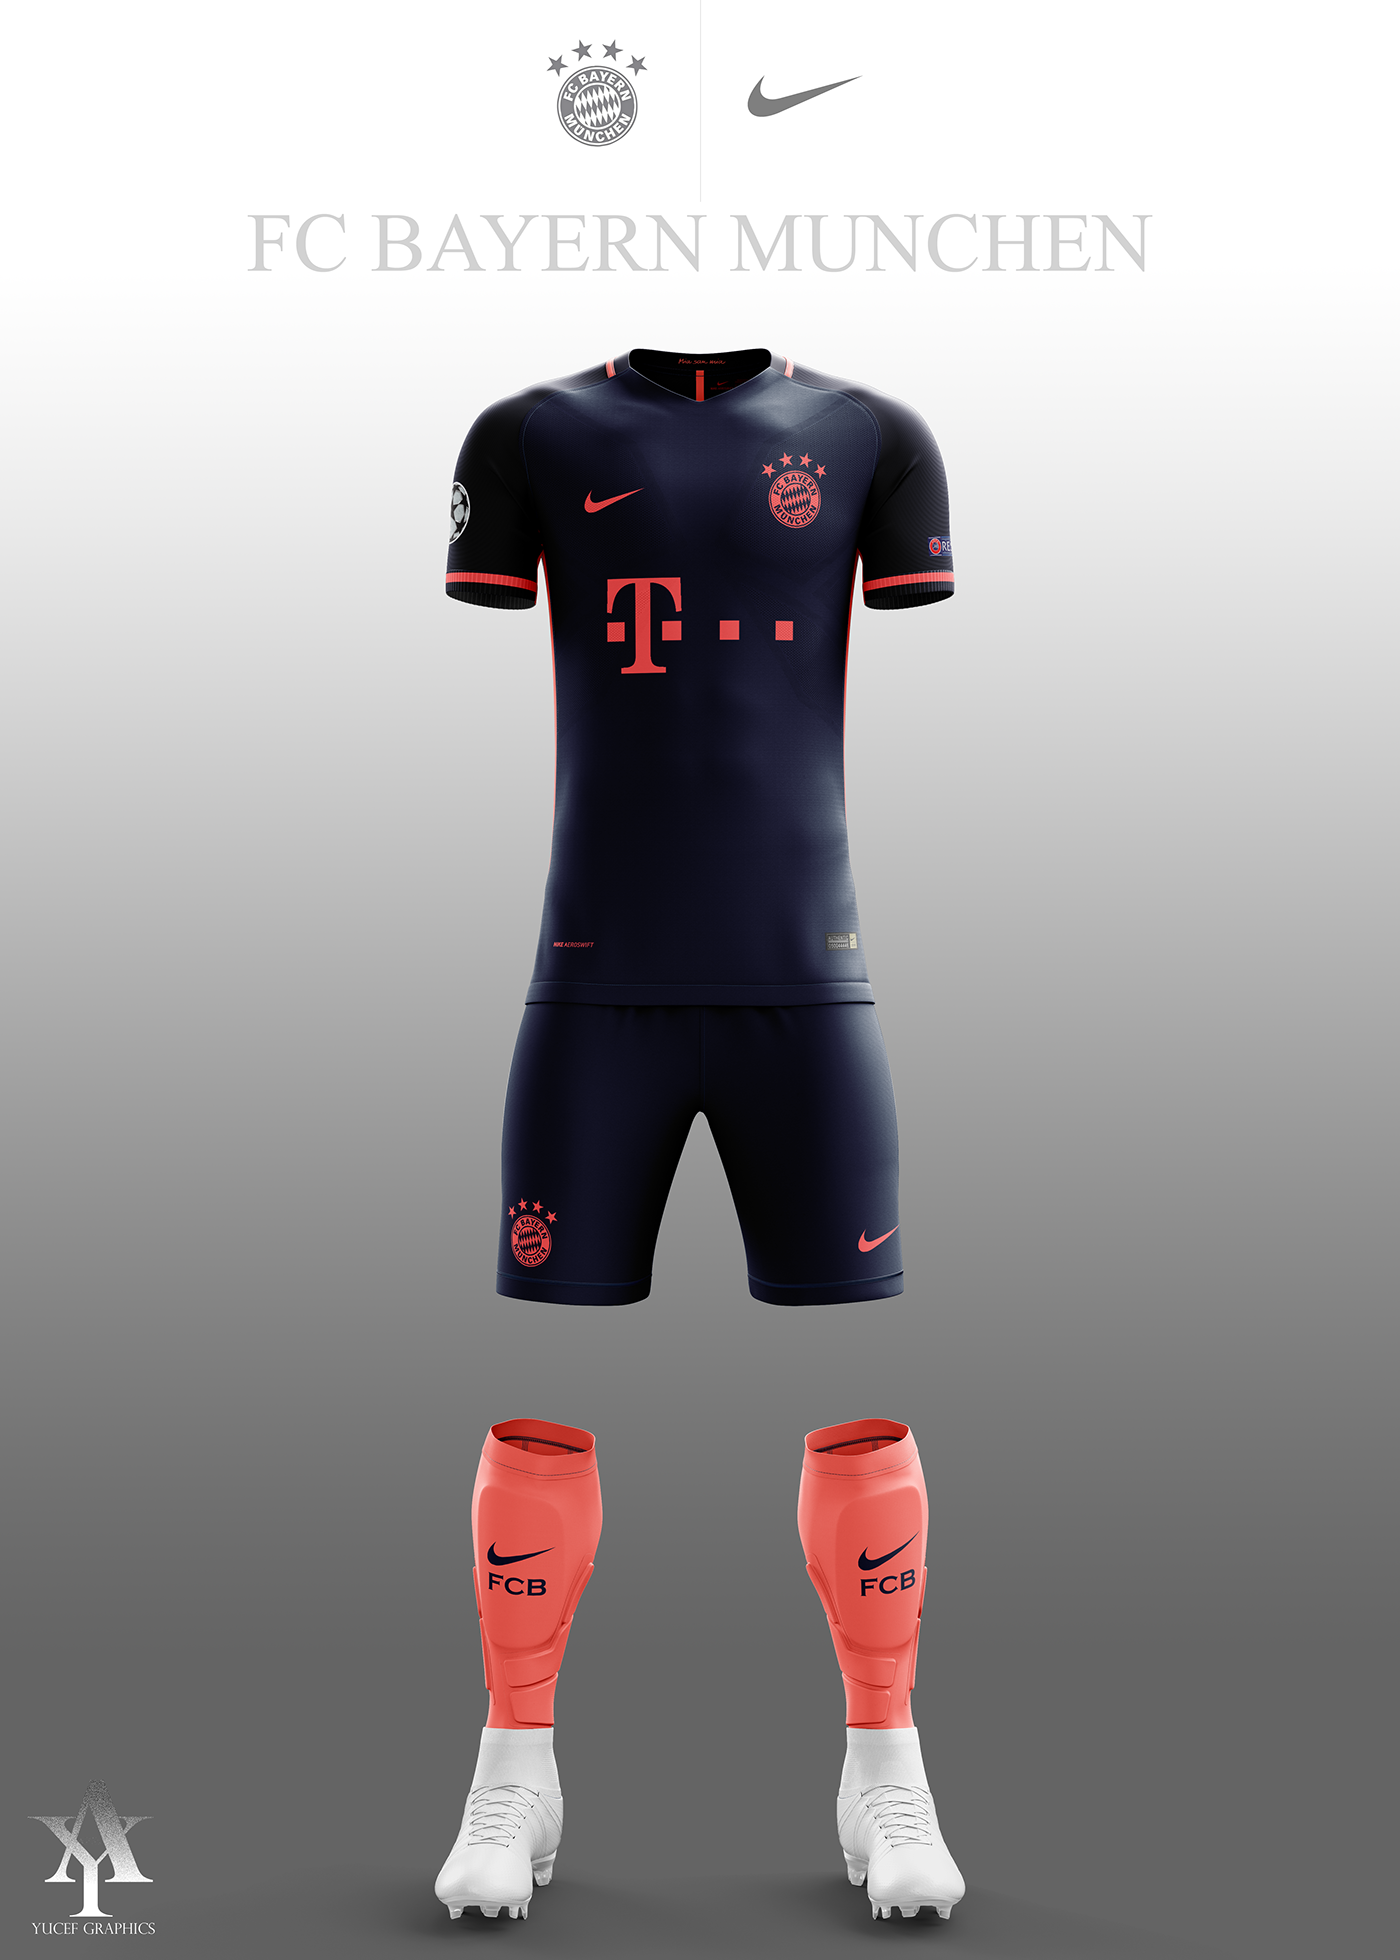 FC Bayern Munchen | 2017/2018 Kits Concept | Nike on Behance